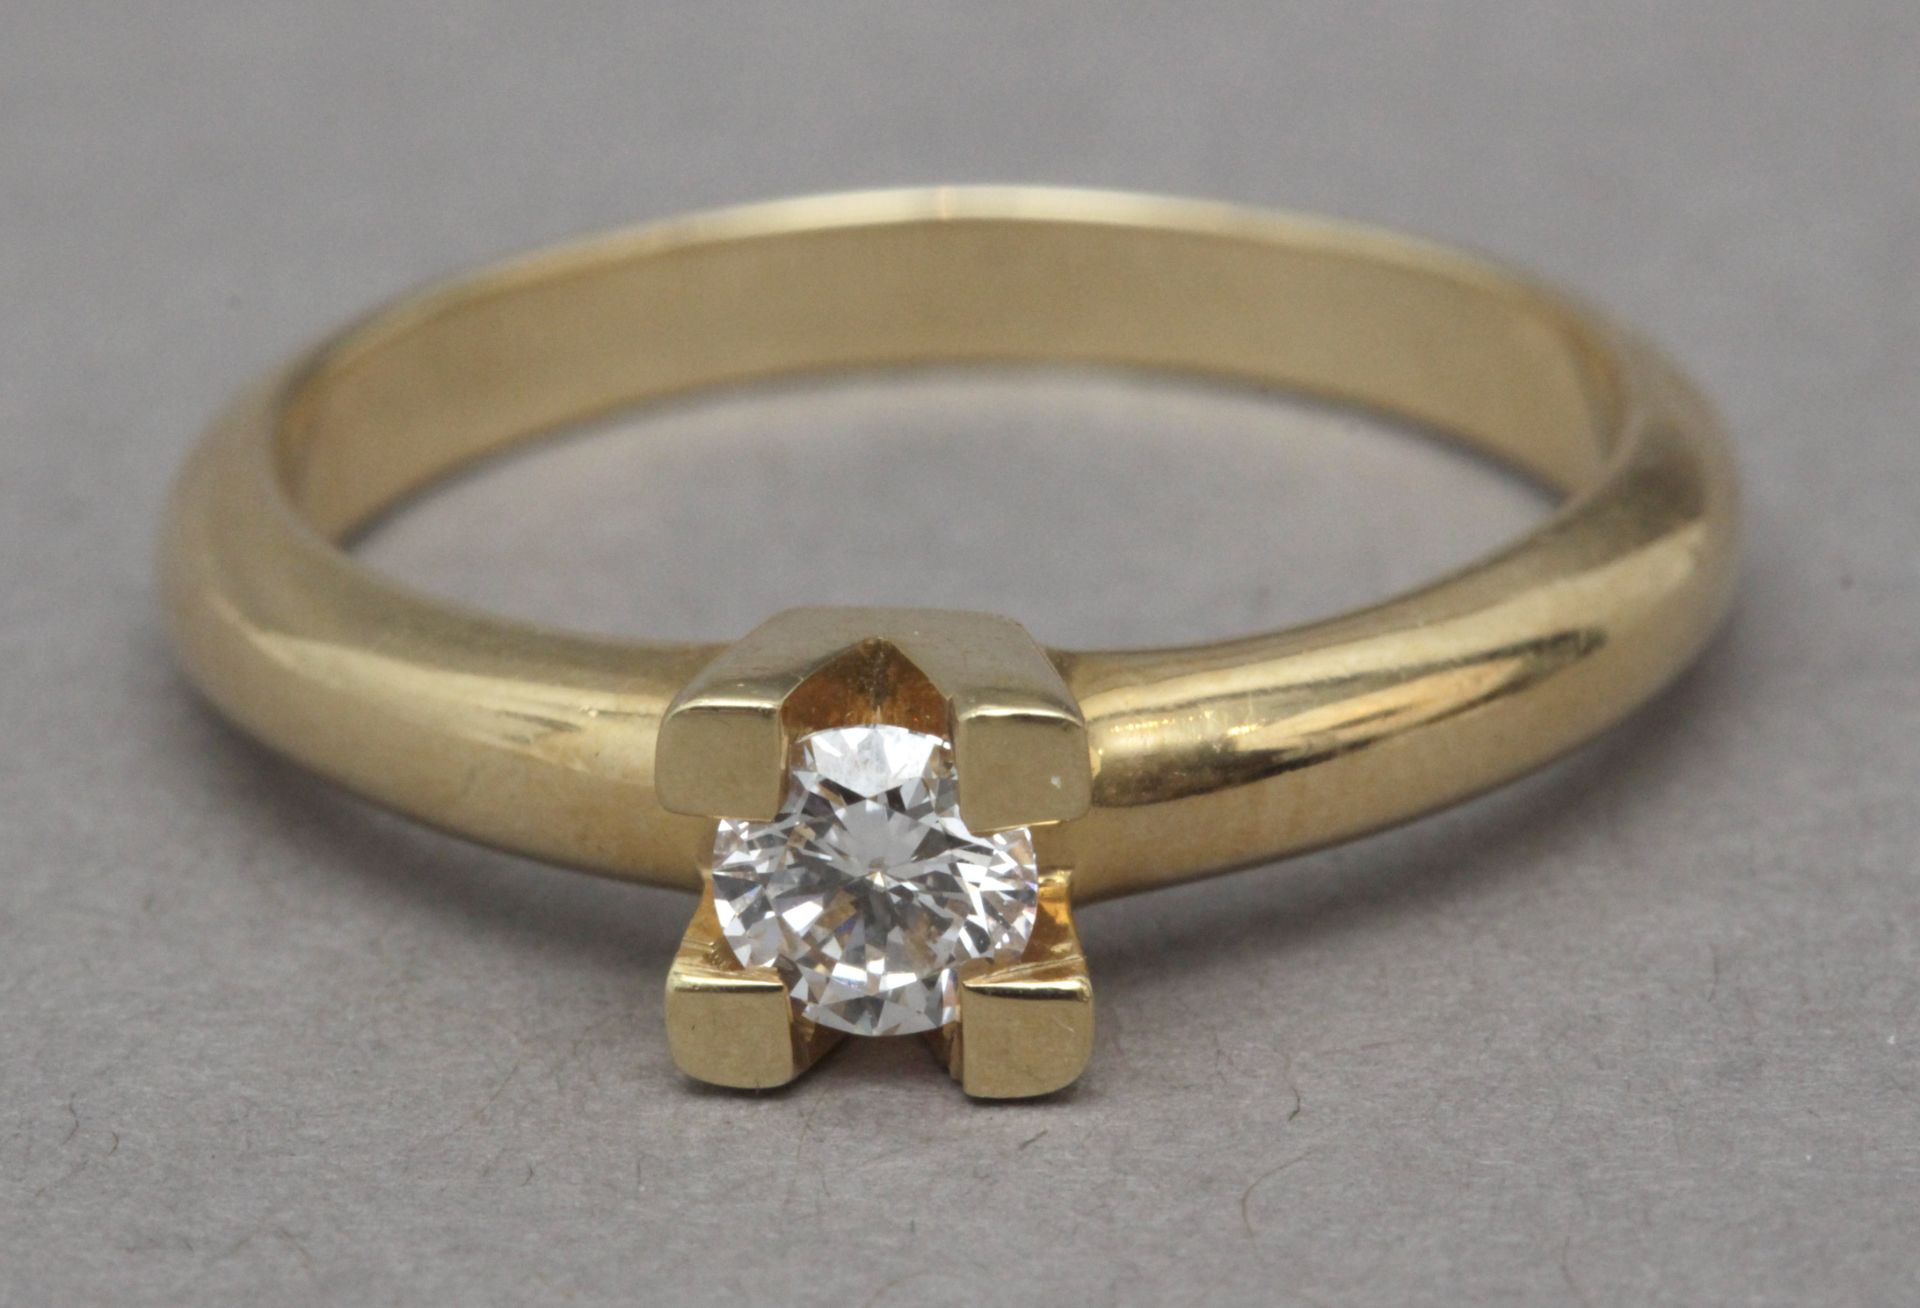 A 0,35 ct. brilliant cut diamond solitaire ring